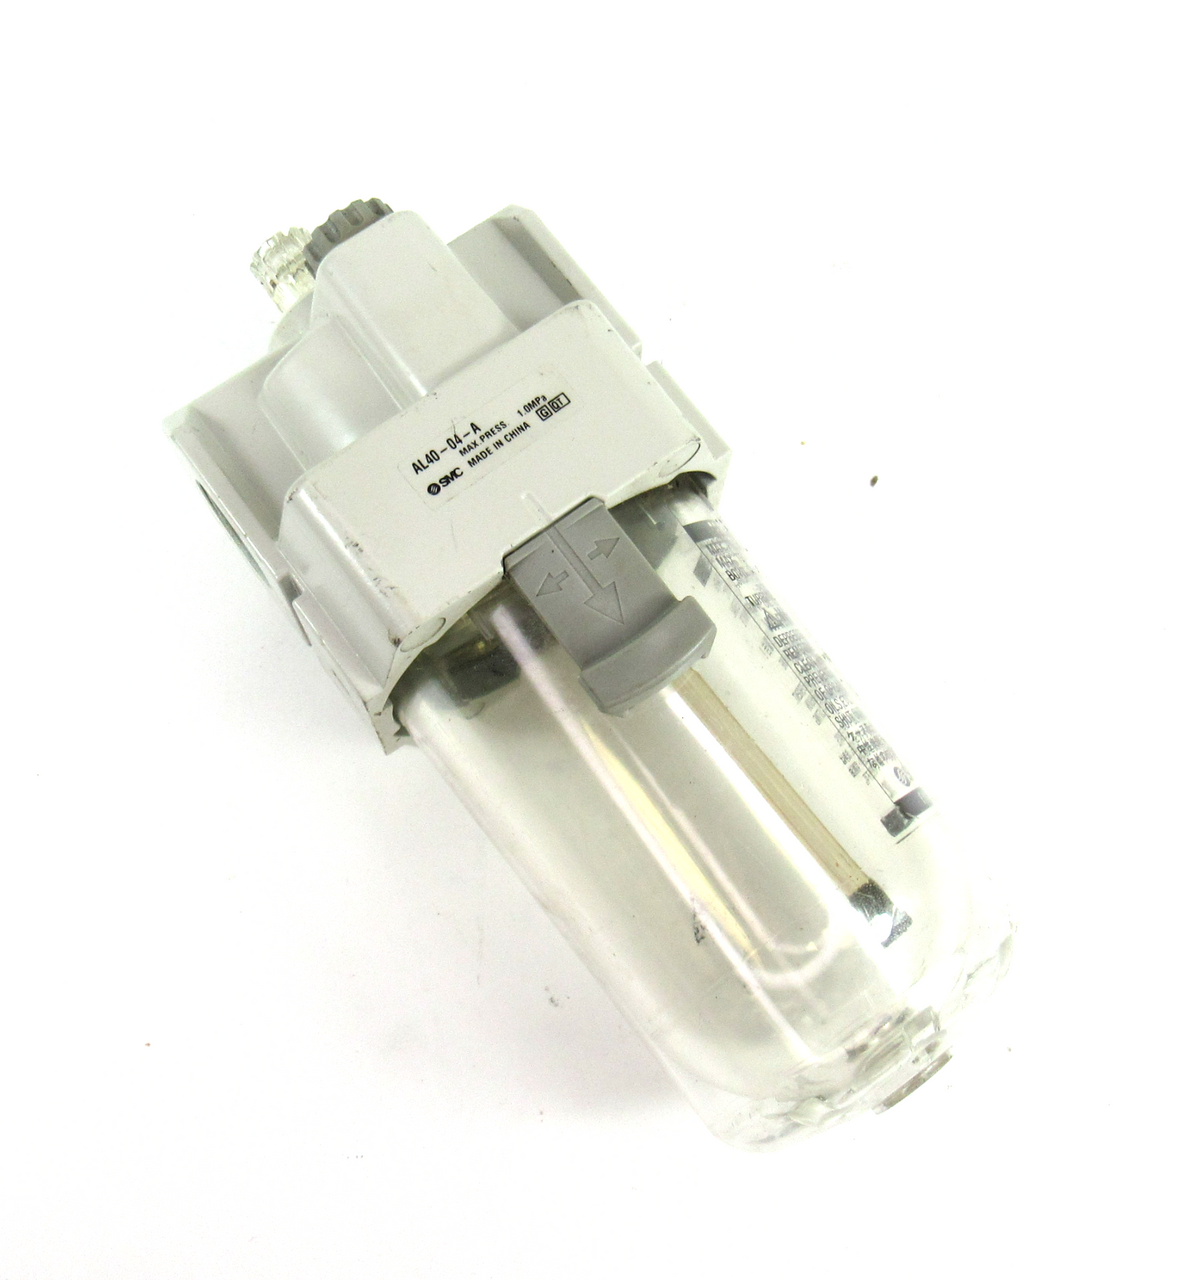 SMC AL40-04-A Filter Lubricator 1.0Mpa